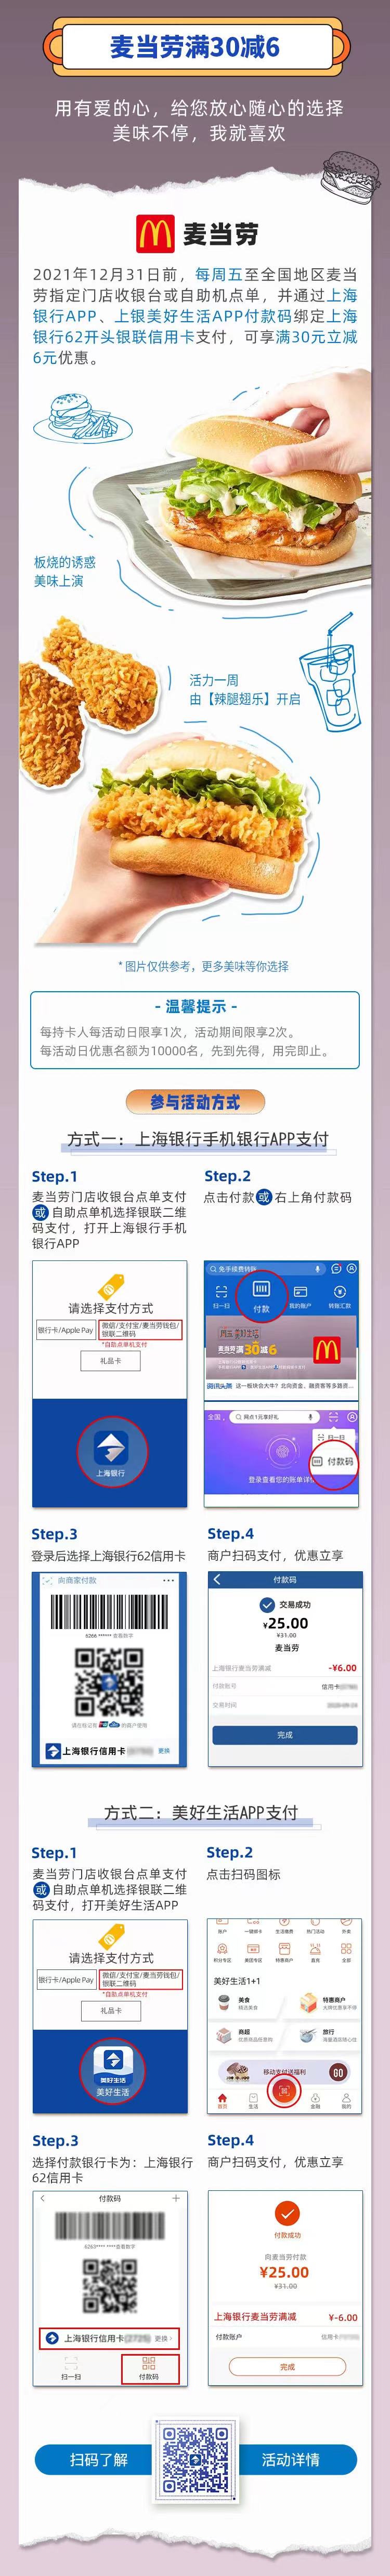 上海银行信用卡周五麦当劳满30-6元